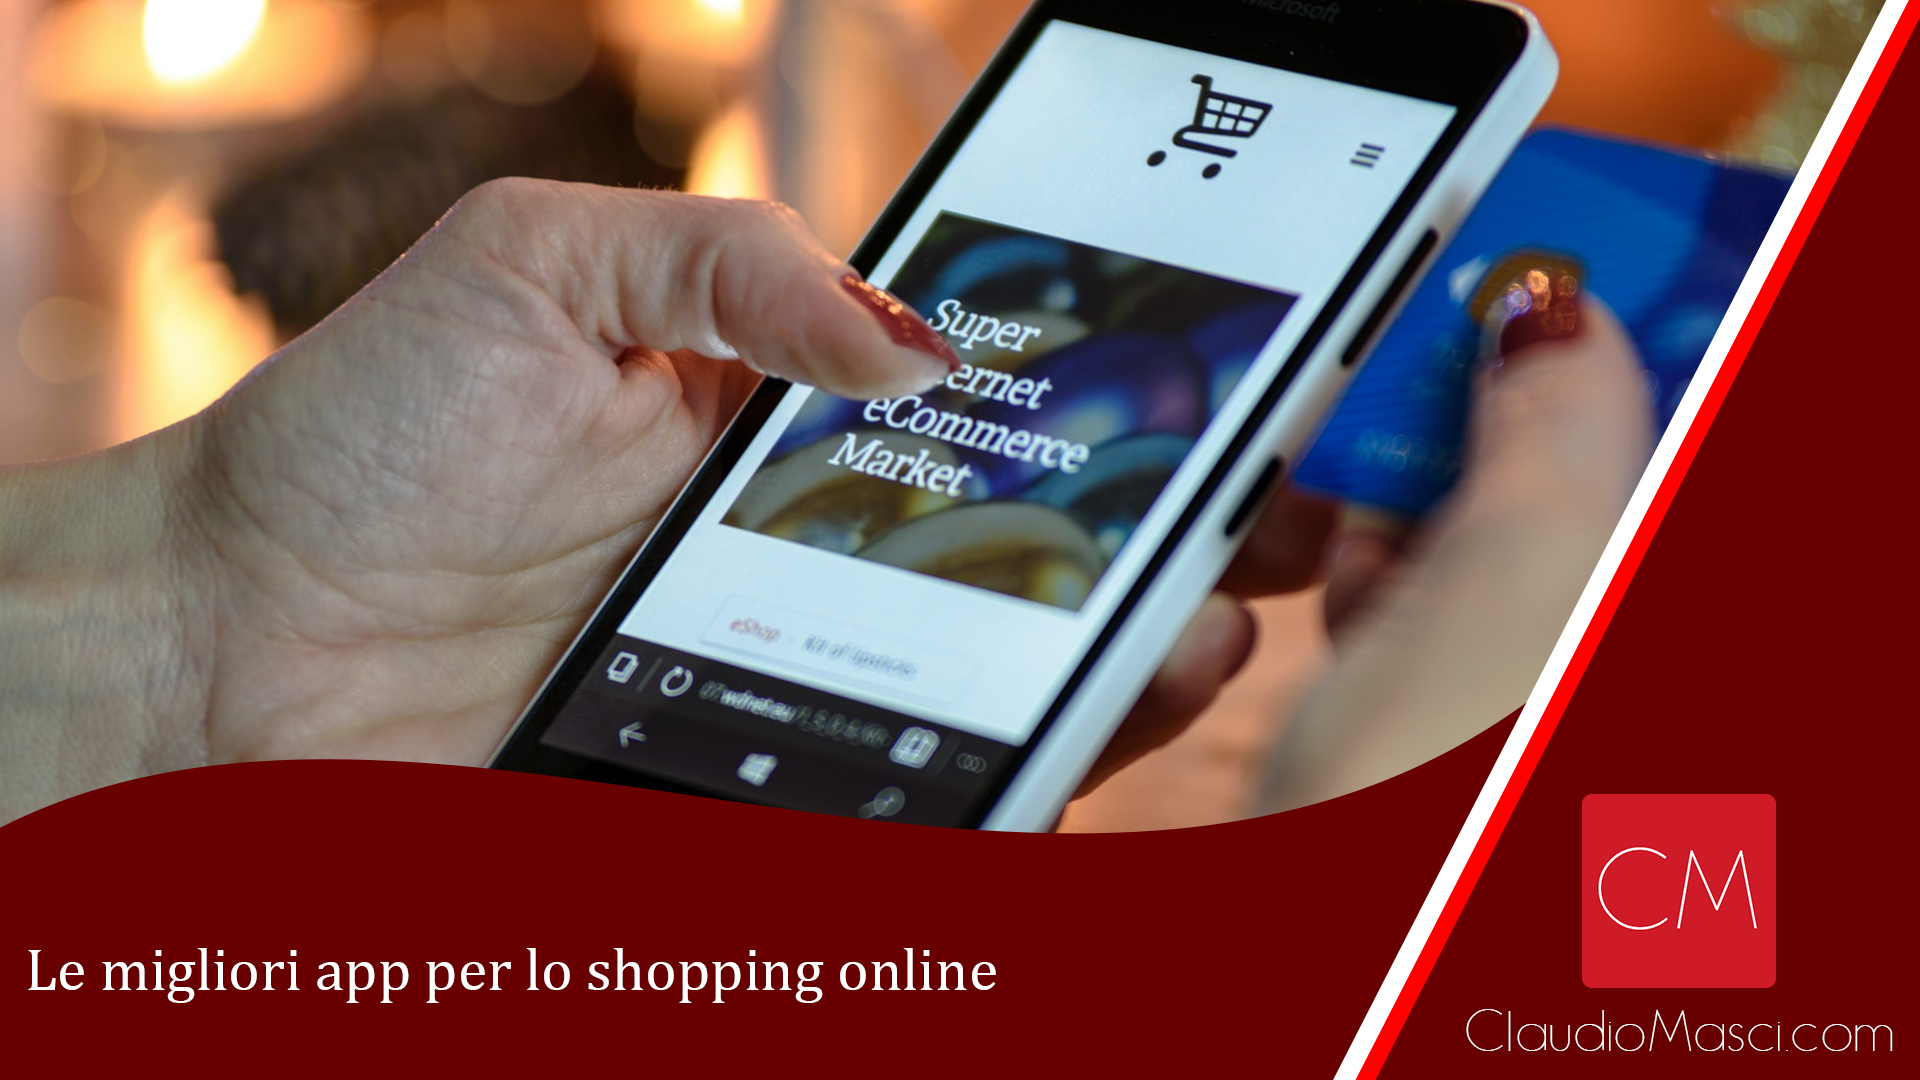 Le migliori app per lo shopping online